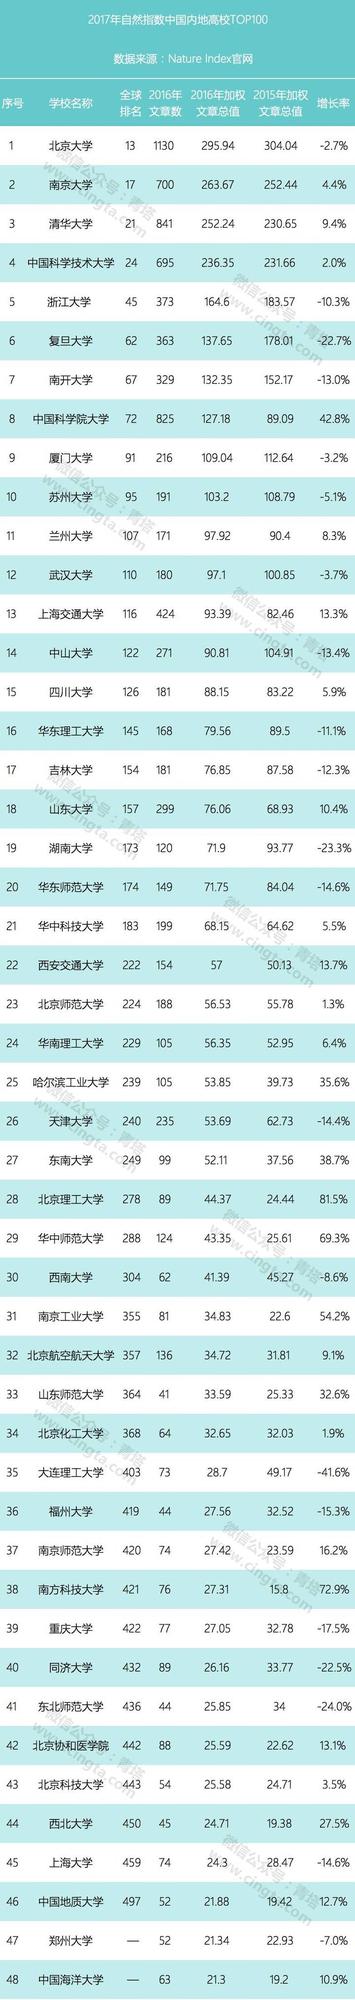 2017年自然指数出炉 浙江5所高校进top100